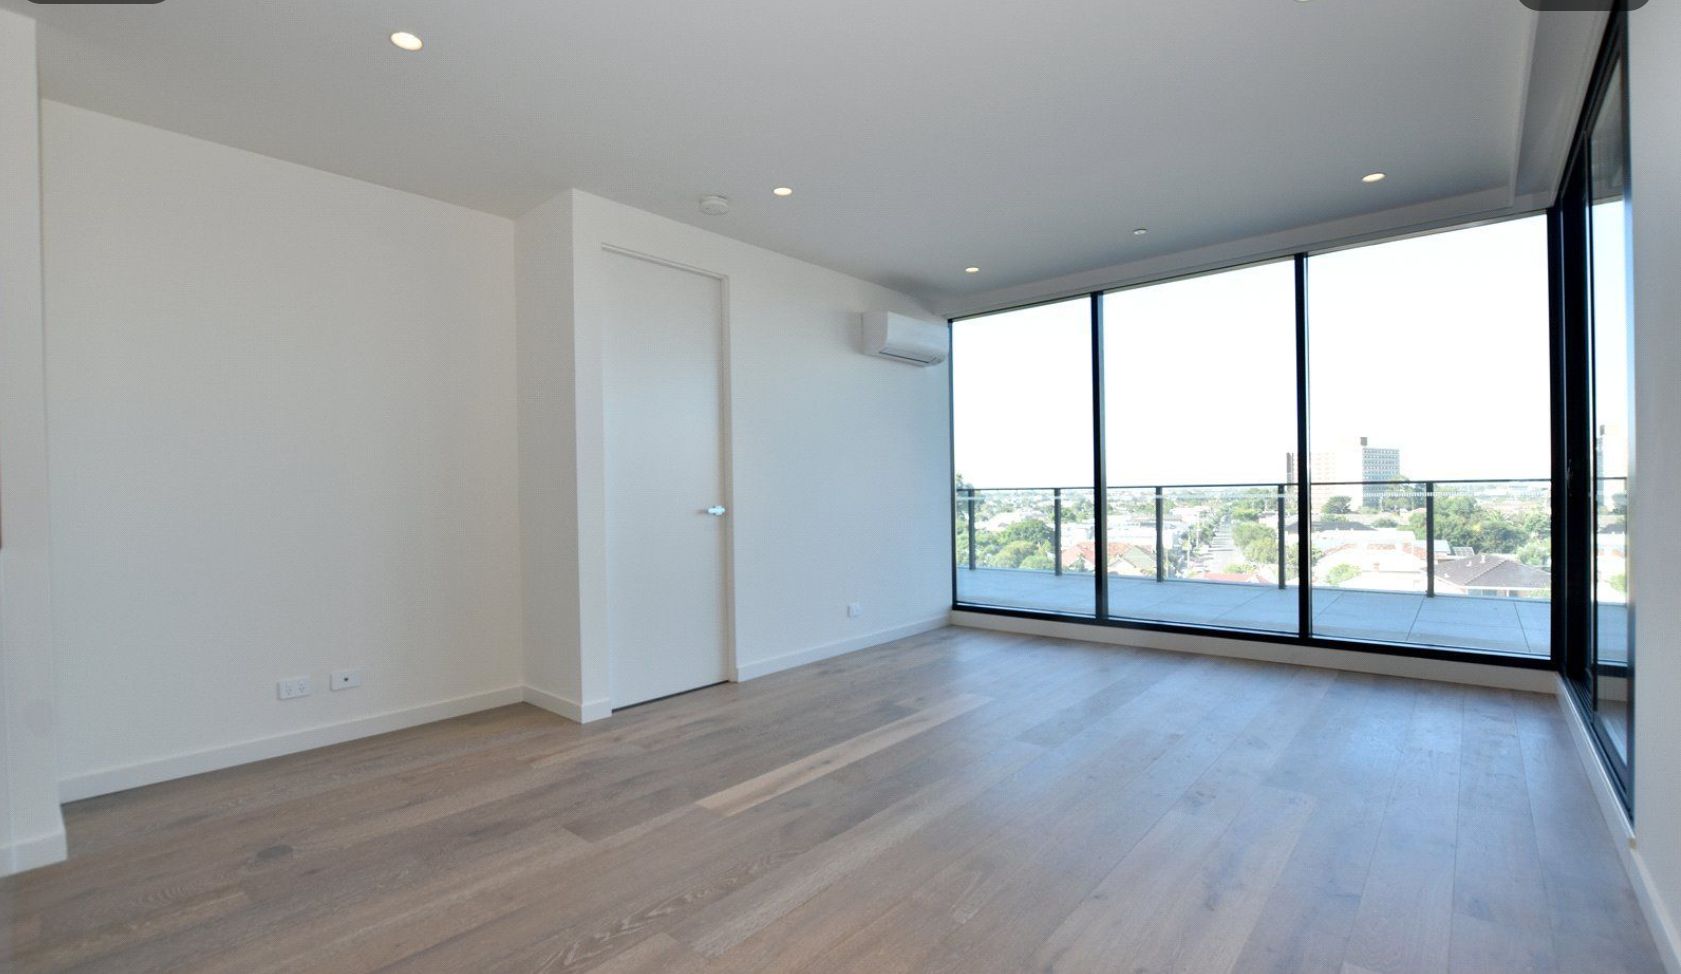 2 bedrooms Apartment / Unit / Flat in 308/188 Ballarat Road FOOTSCRAY VIC, 3011